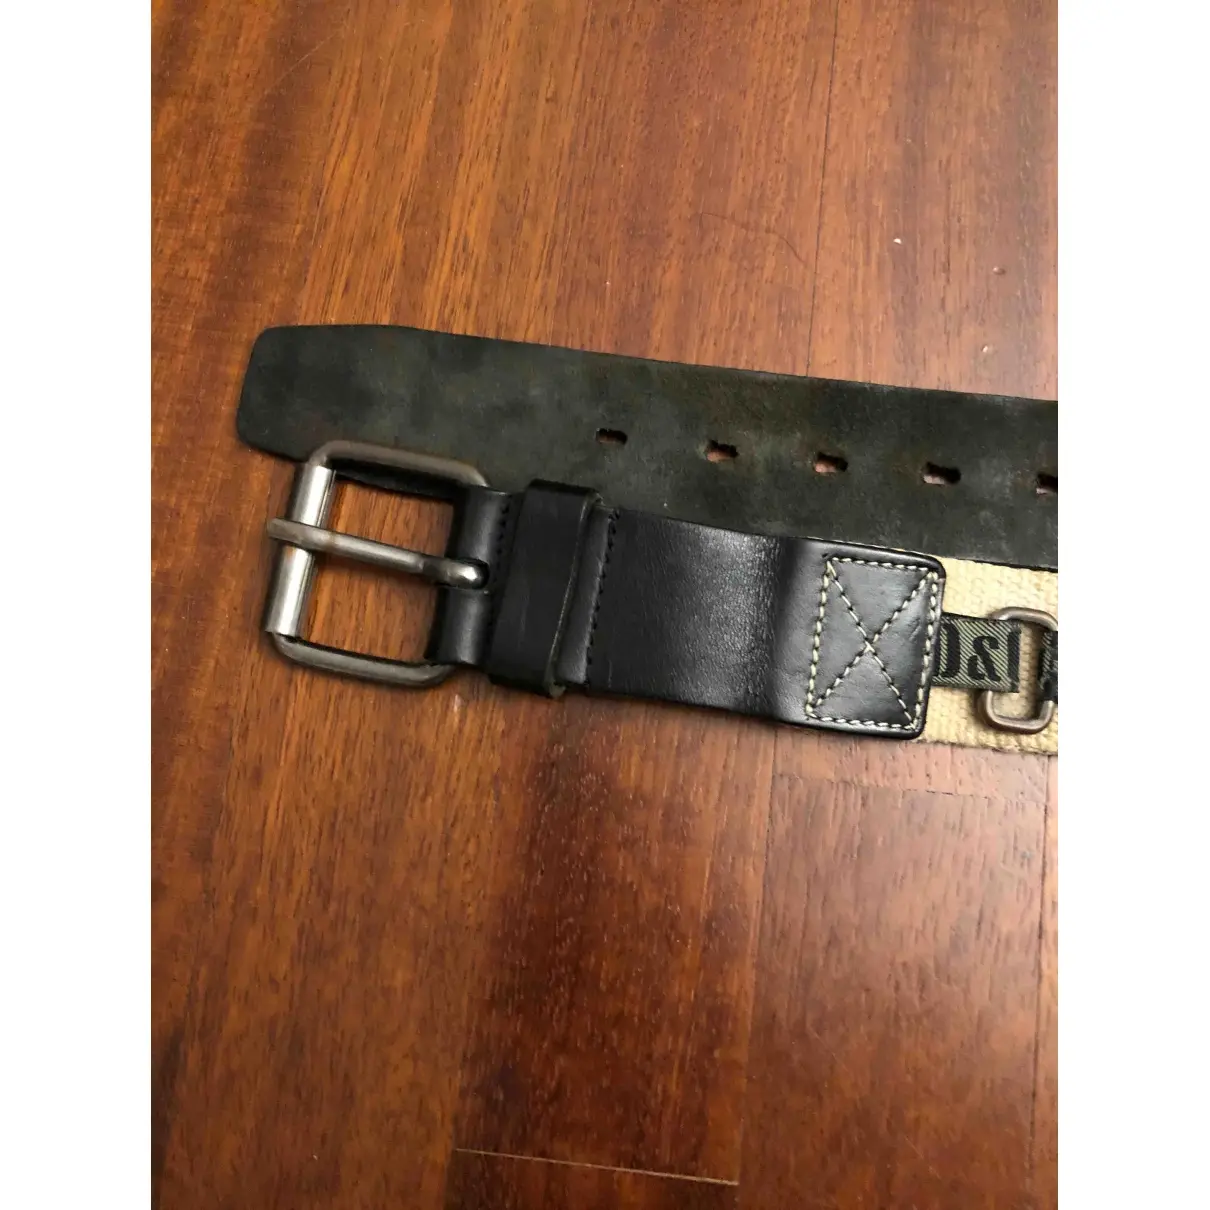 Buy D&G Cloth belt online - Vintage